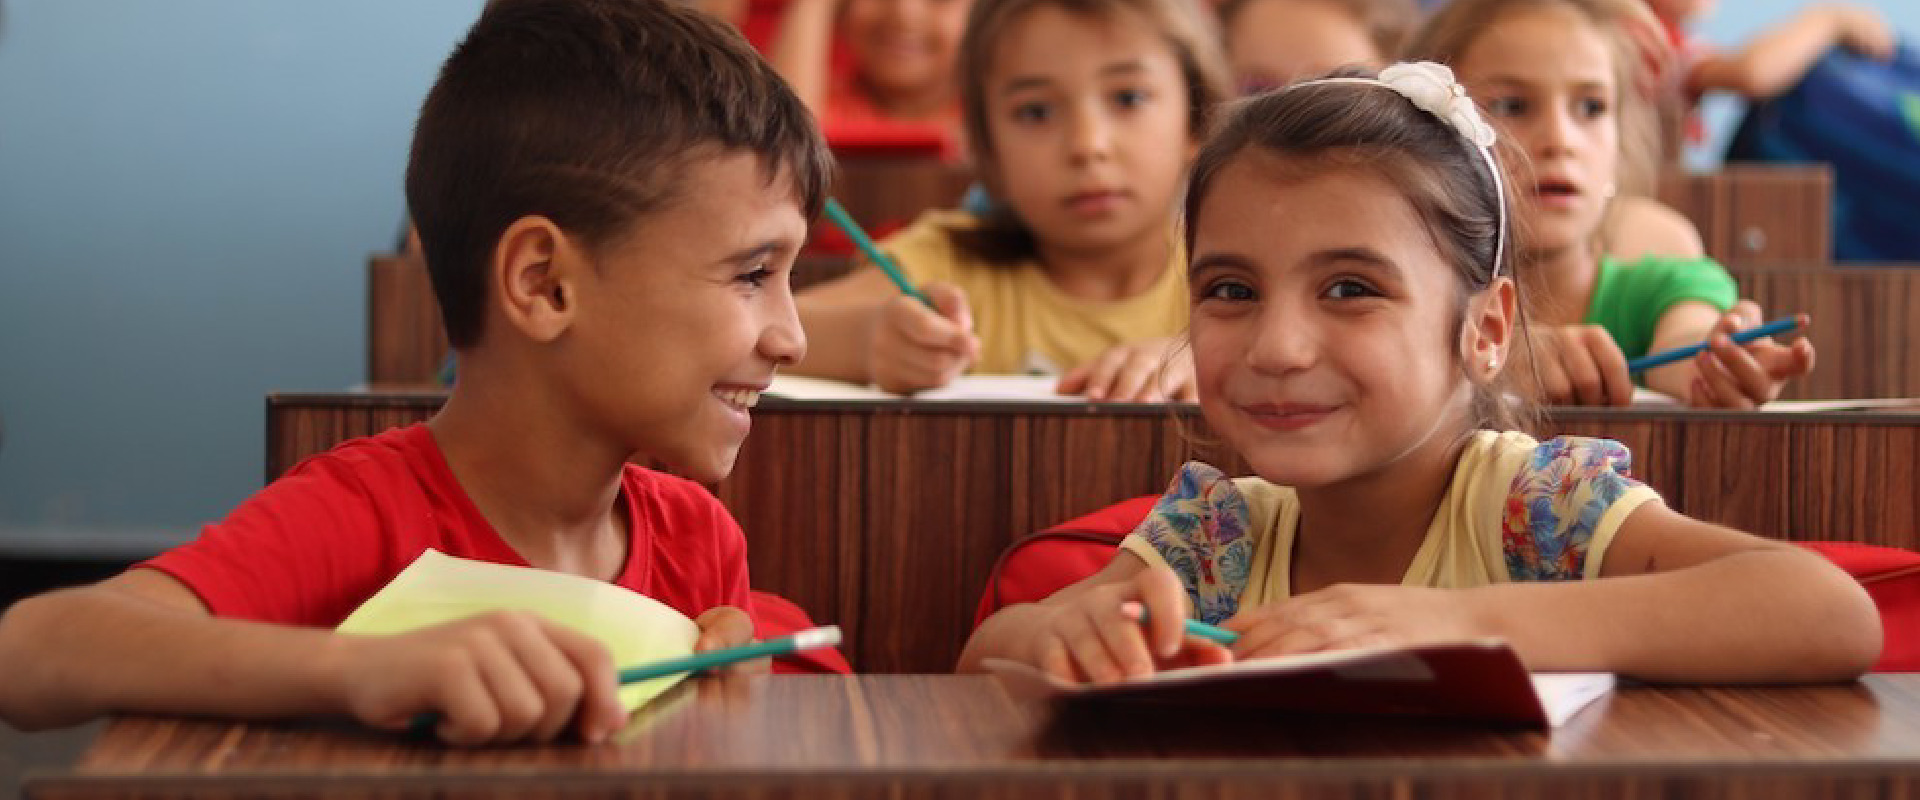 Featured image for “Fundación Kiri entrega consejos para una buena convivencia escolar”